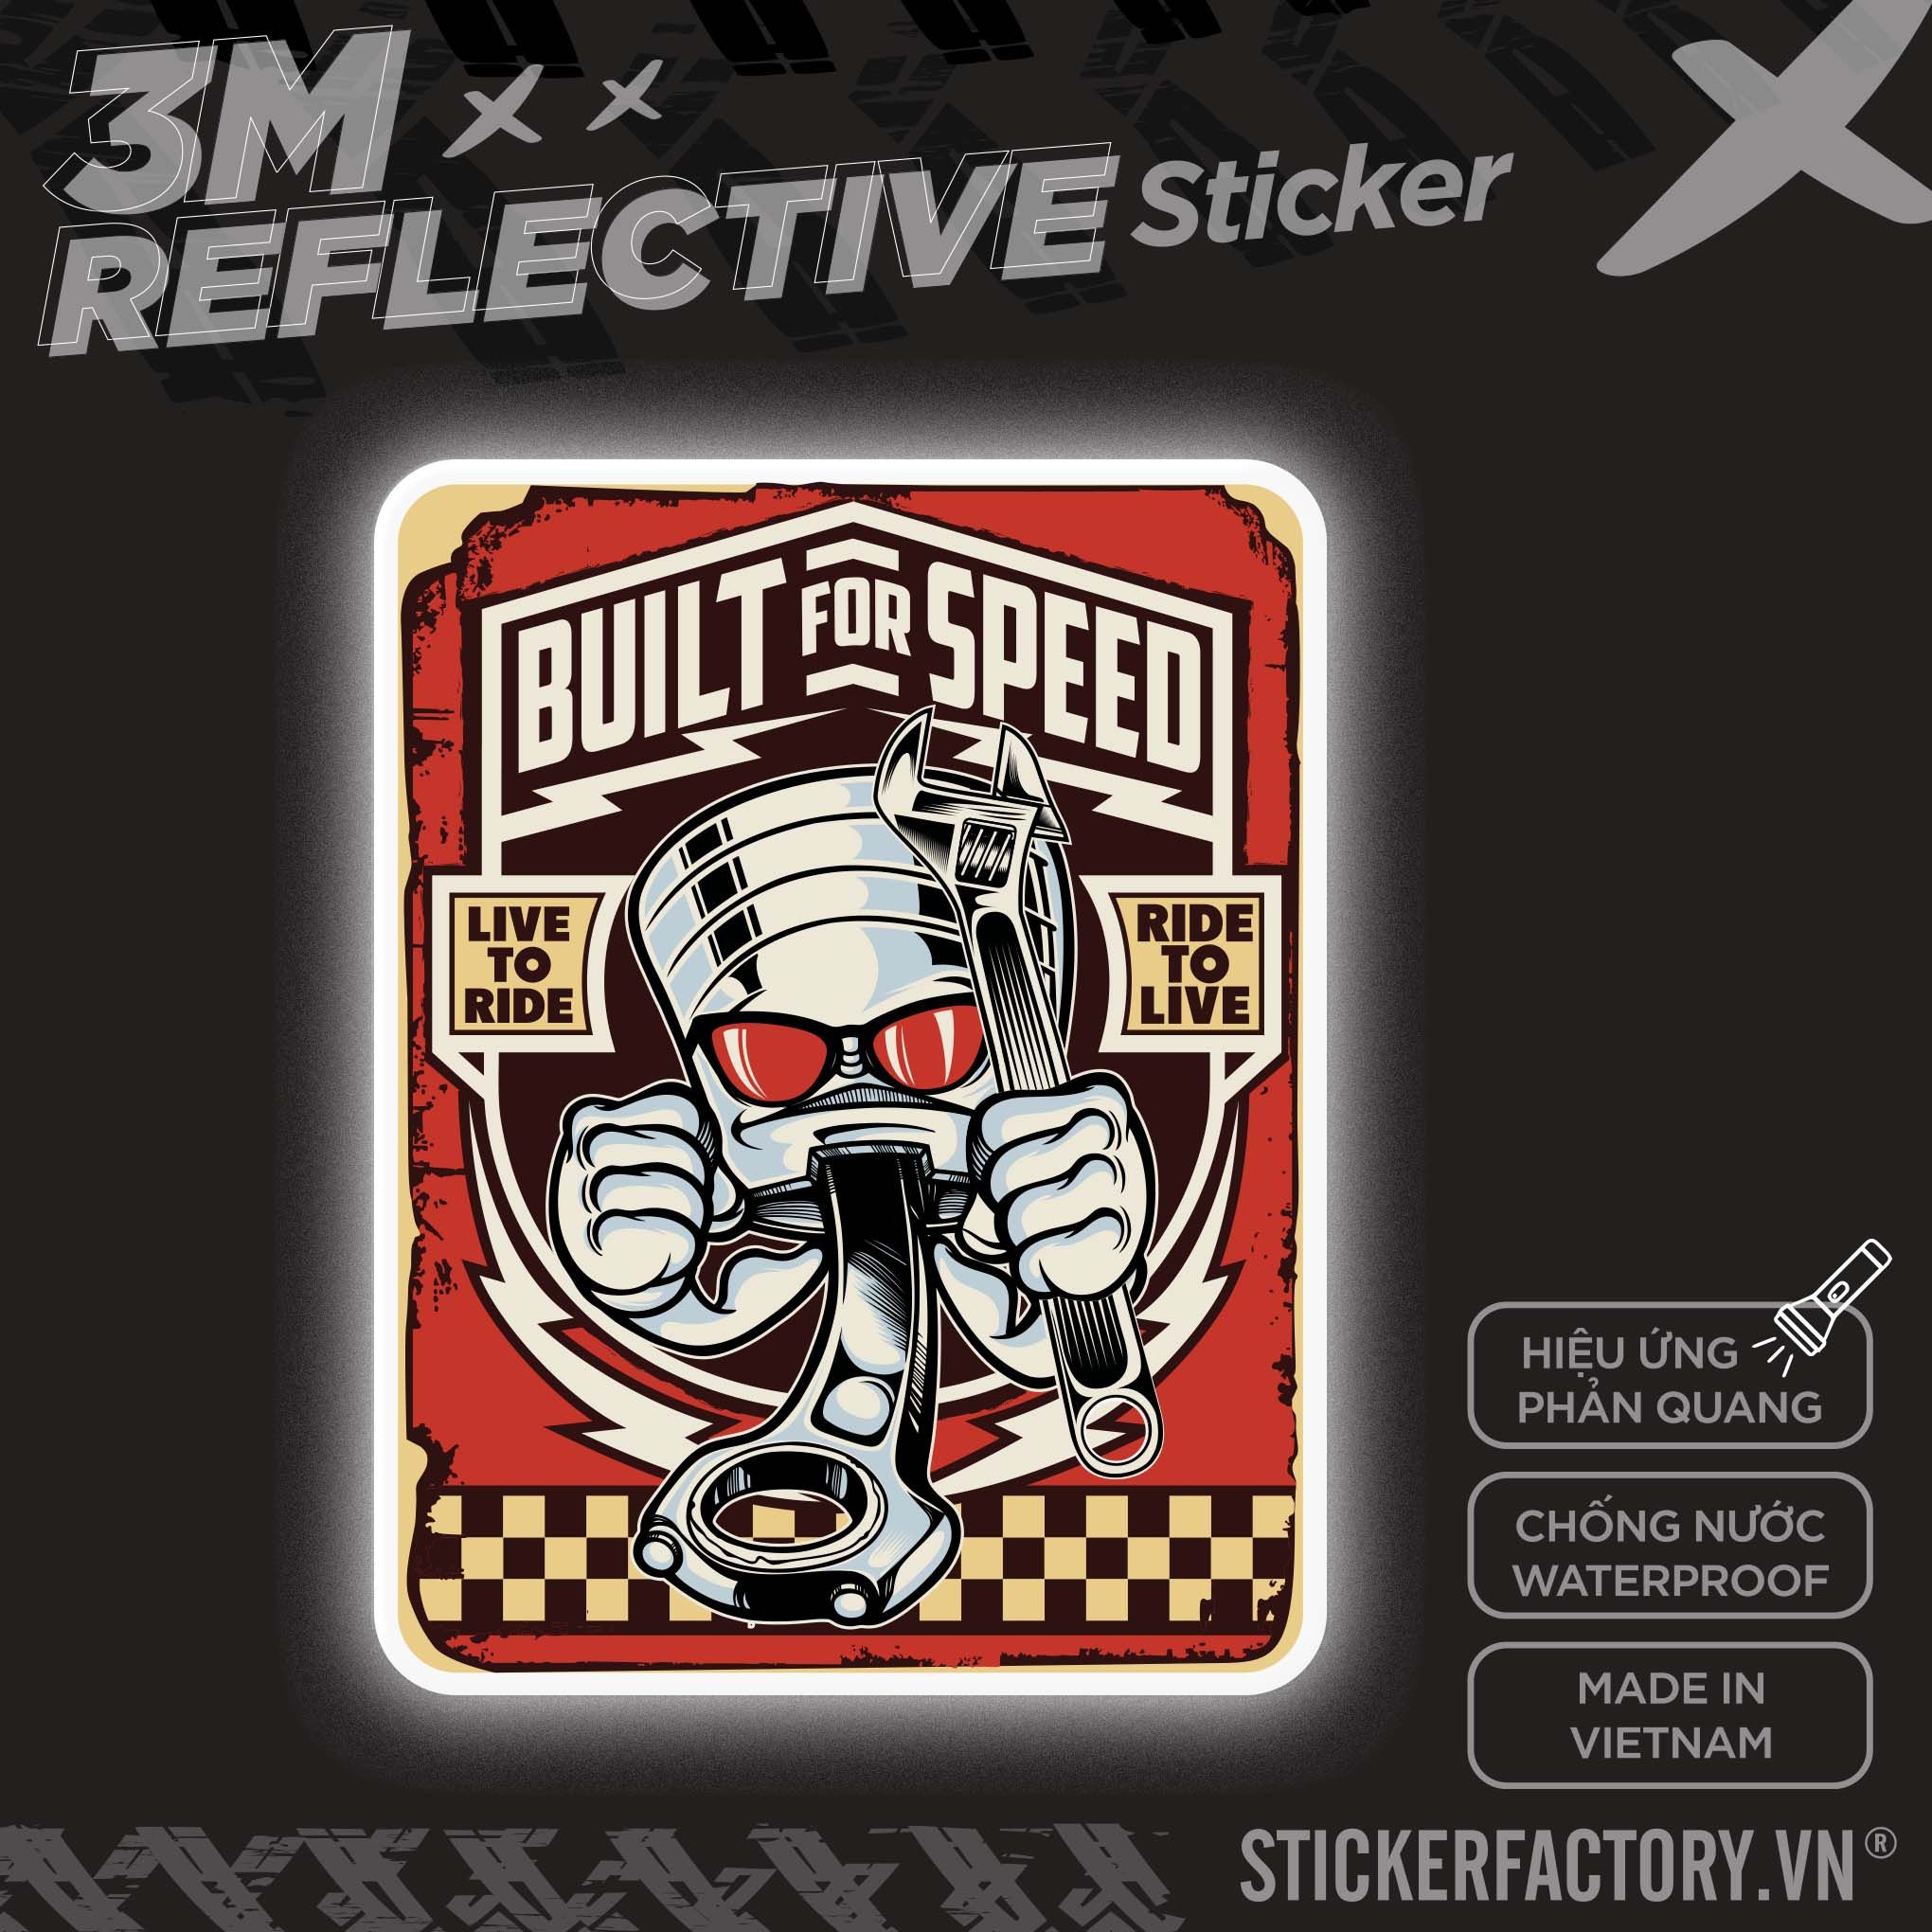 BUILT FOR SPEED PISTON 3M - Reflective Sticker Die-cut